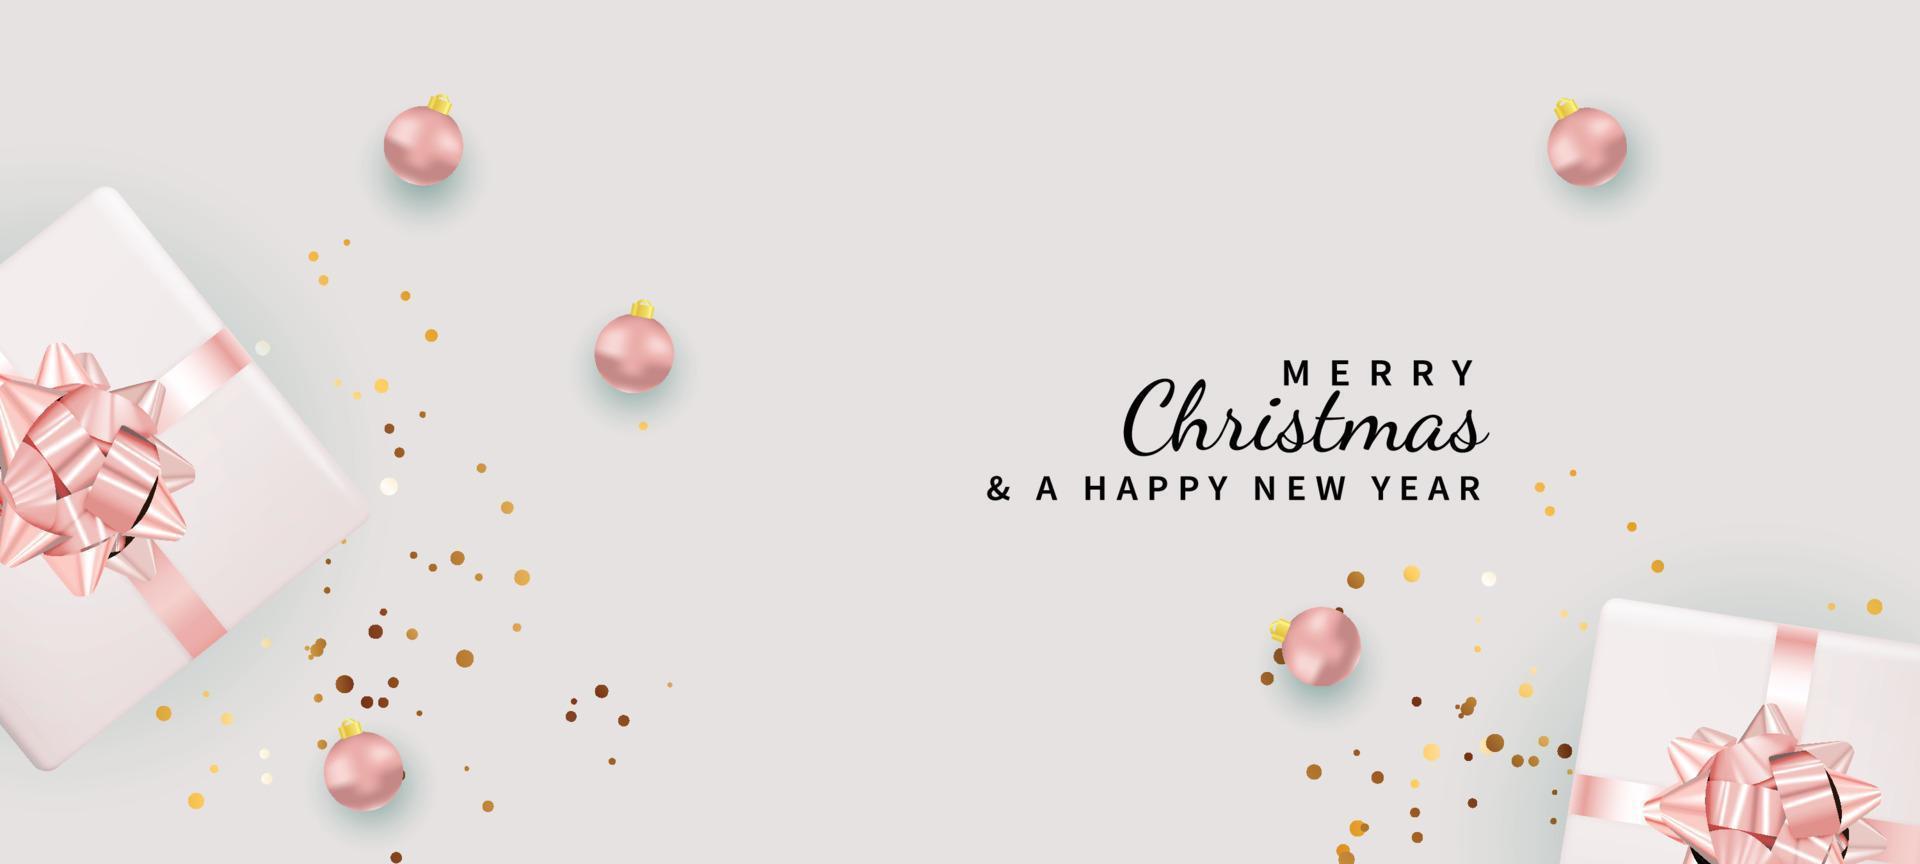 vrolijk Kerstmis roze achtergrond met geschenken, decoraties, confetti vector